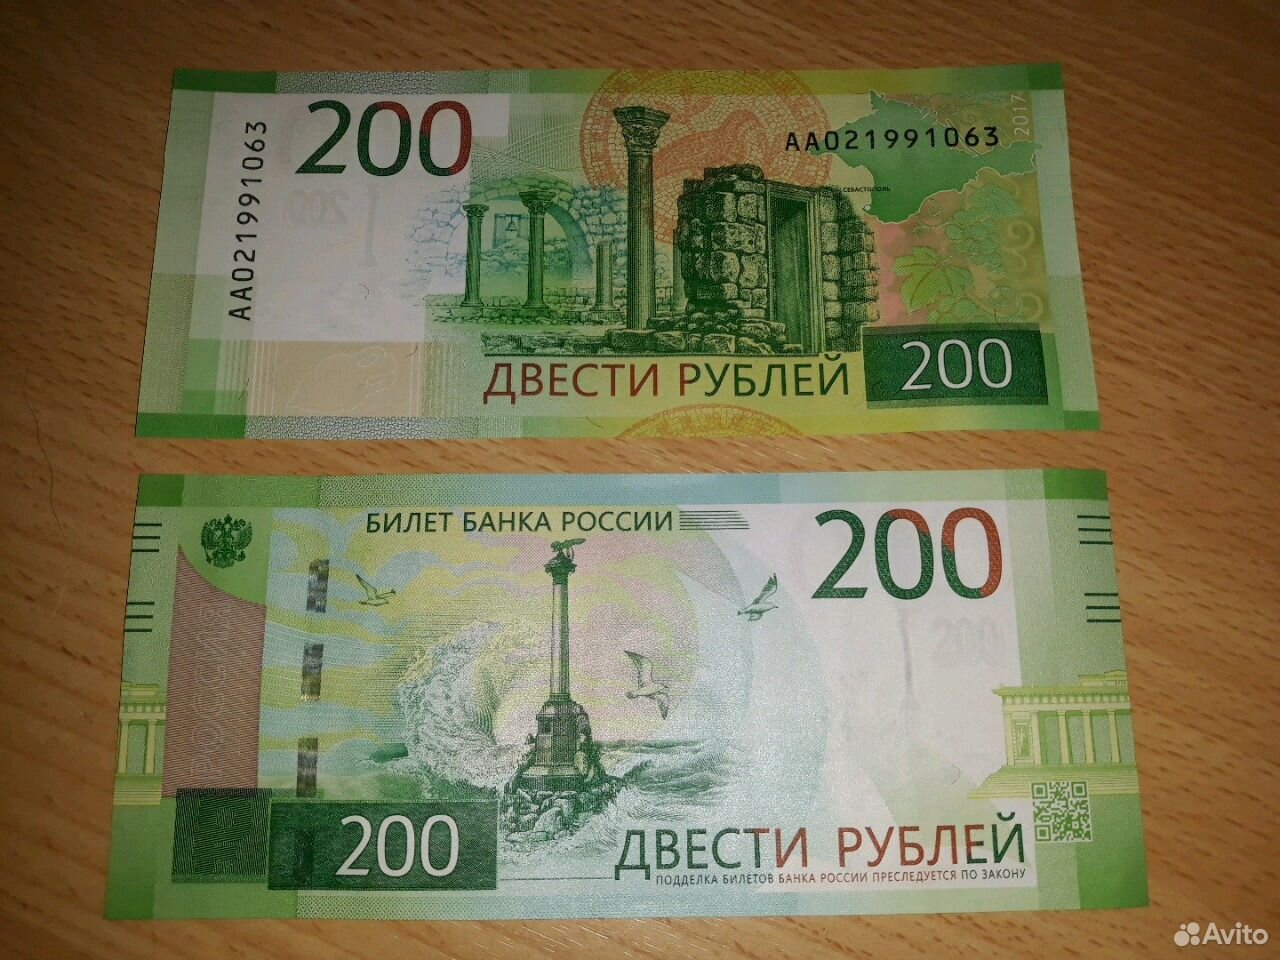 170 200 рублей. Купюра 200. Купюра 200 рублей. 200 Рублей банкнота. Пластиковые 200 рублей.